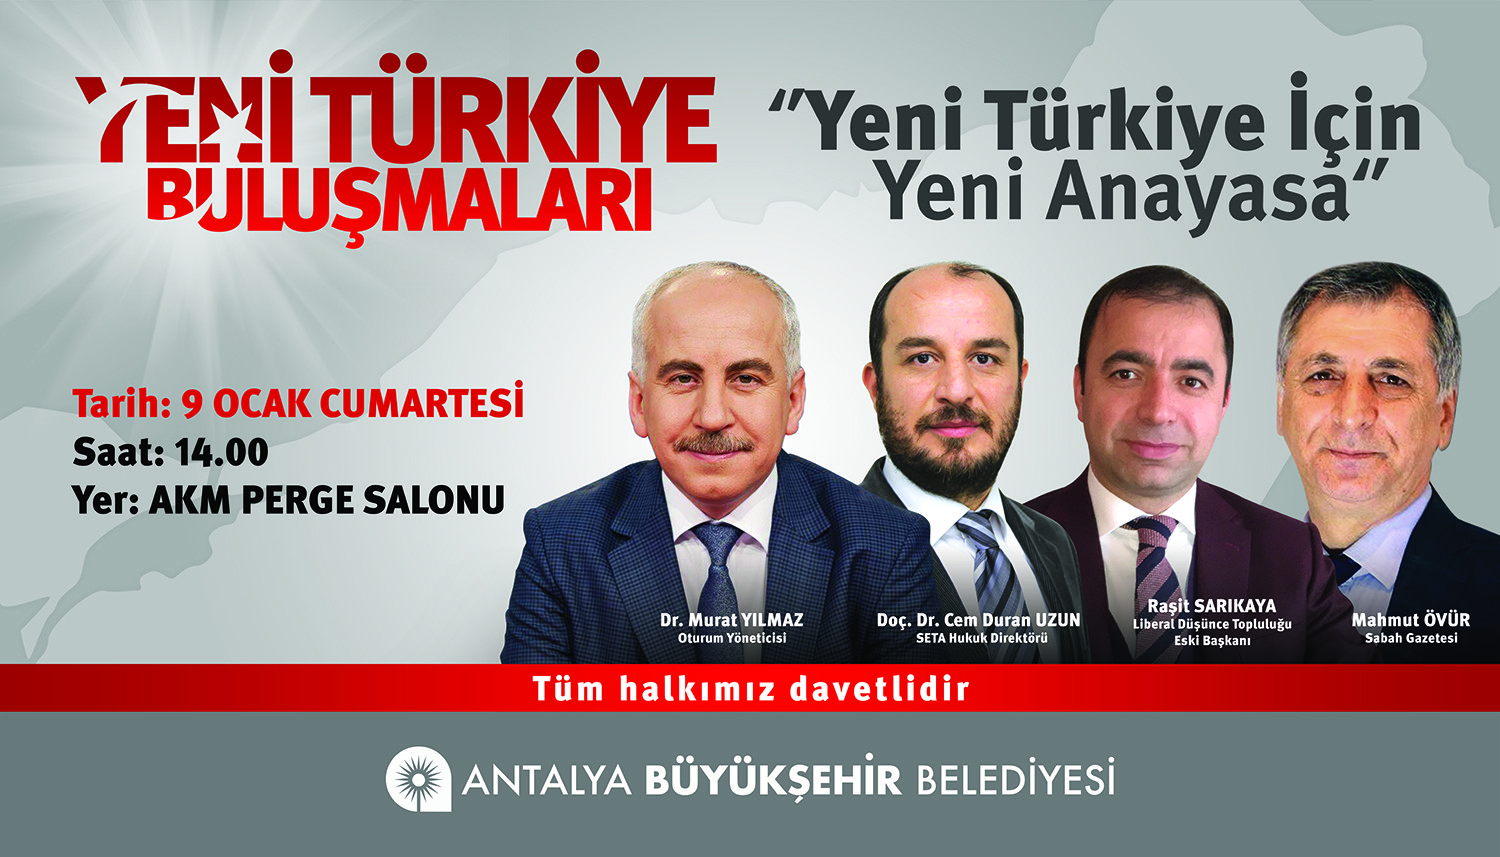 Yeni Türkiye için Yeni Anayasa